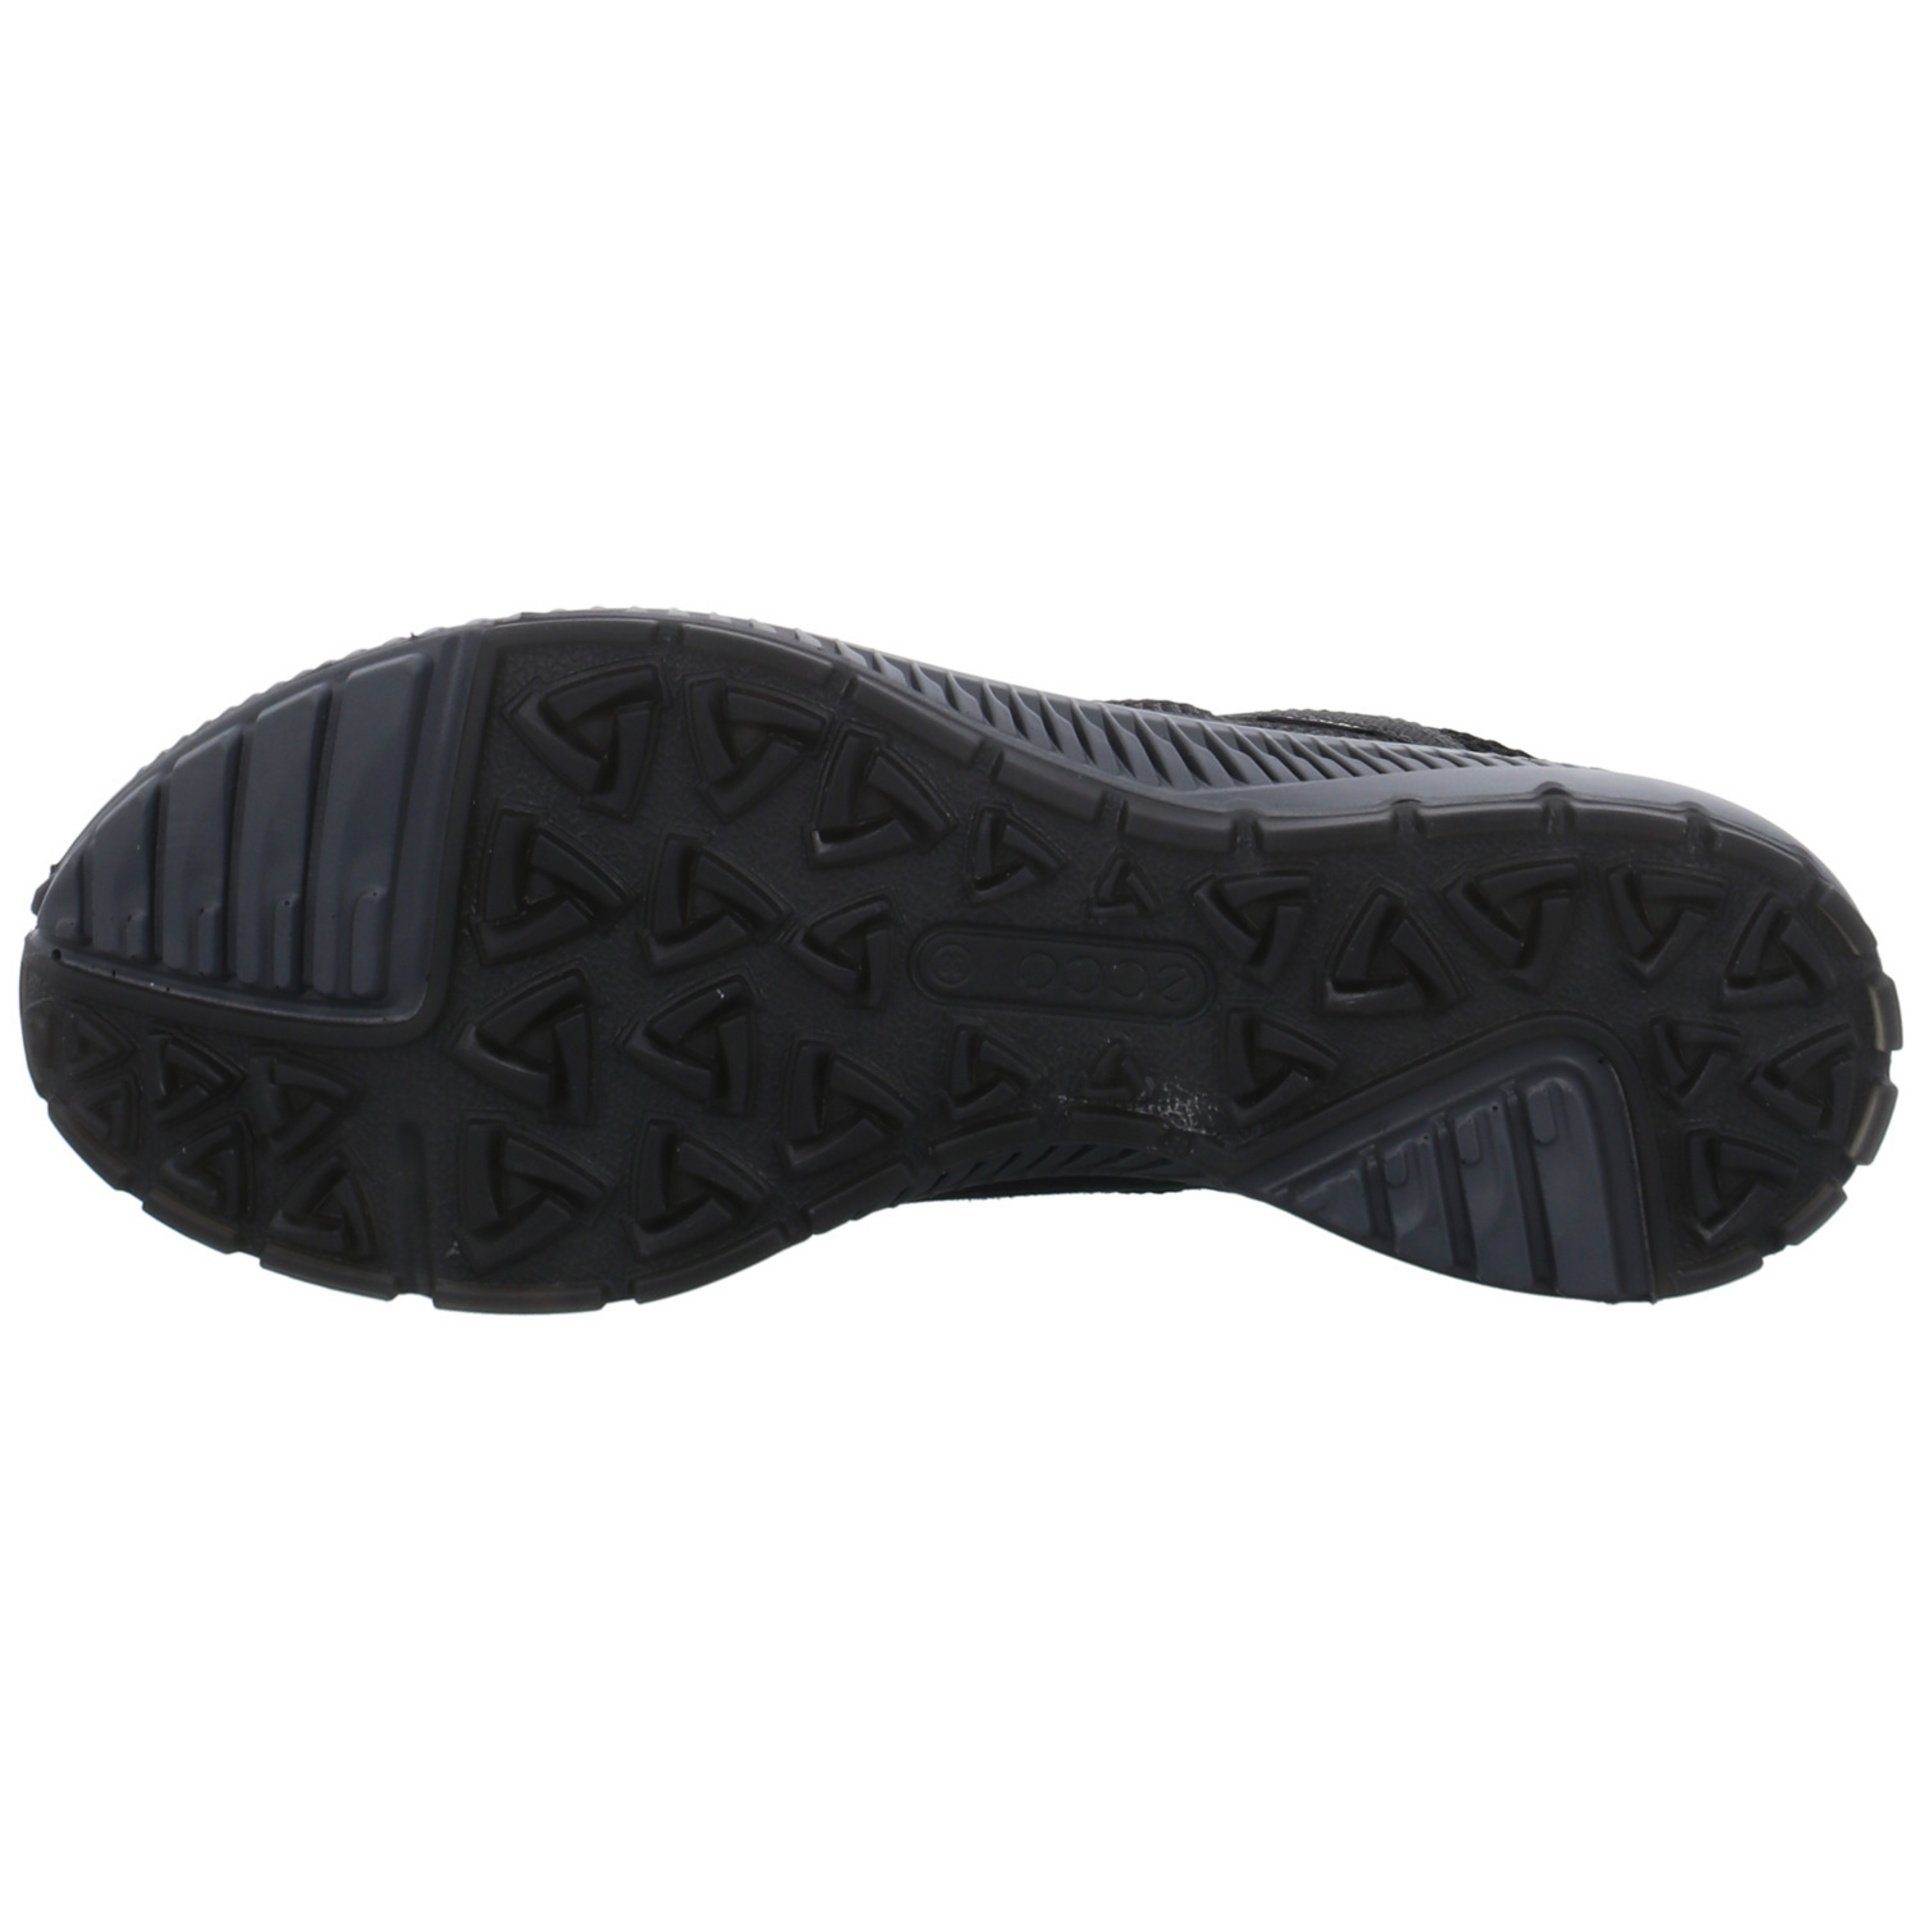 Outdoor black Terracruise Outdoorschuh GTX Synthetikkombination Outdoorschuh Damen Ecco Schuhe